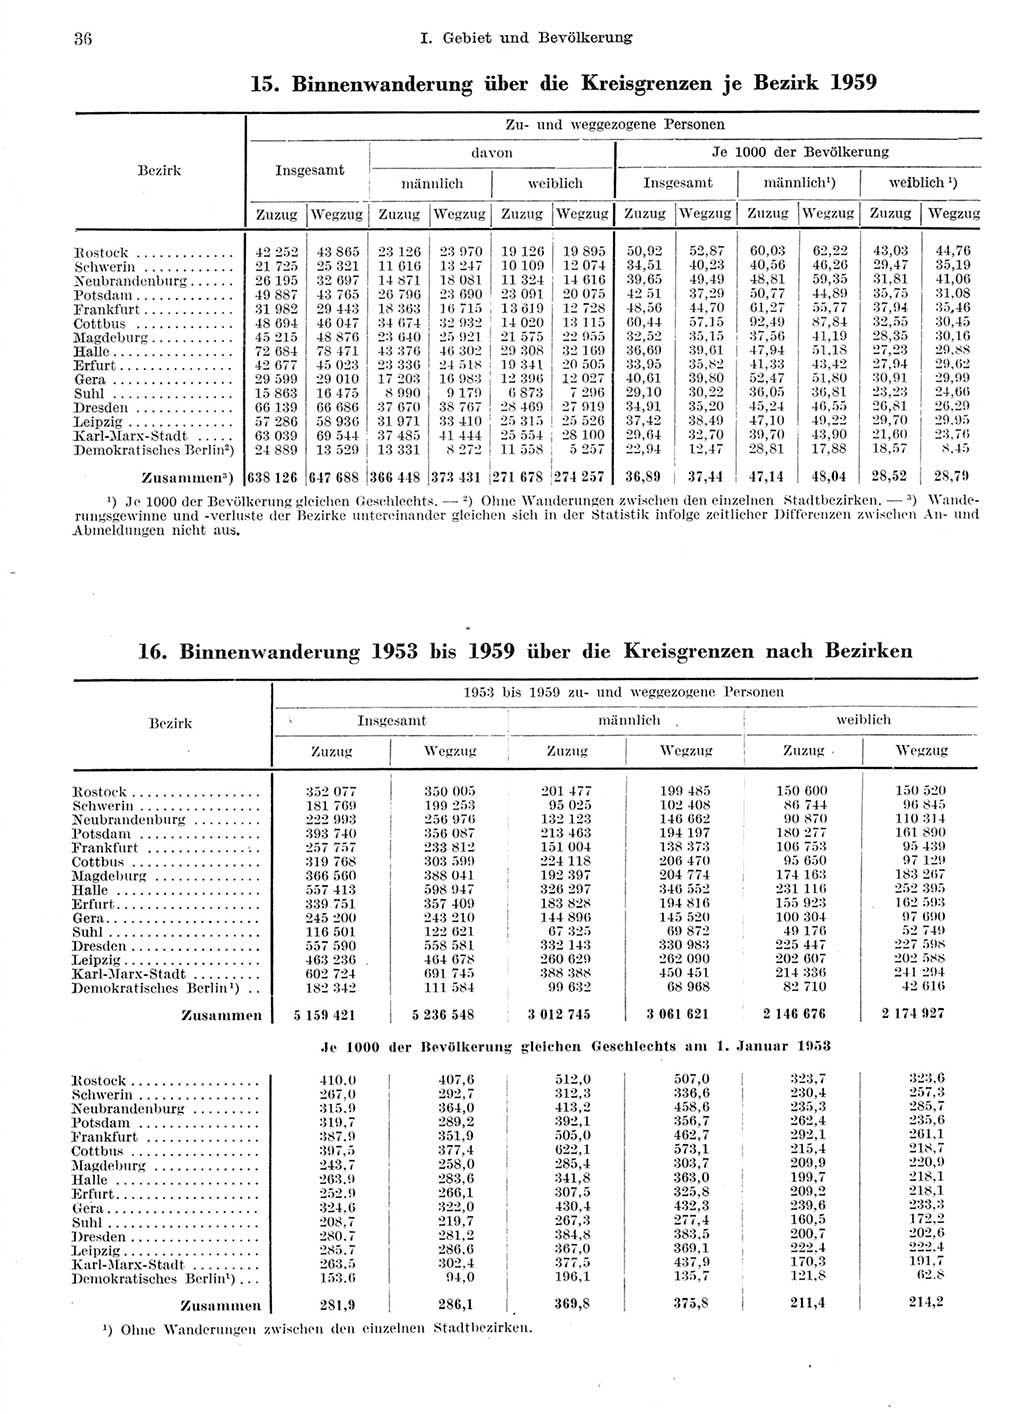 Statistisches Jahrbuch der Deutschen Demokratischen Republik (DDR) 1959, Seite 36 (Stat. Jb. DDR 1959, S. 36)